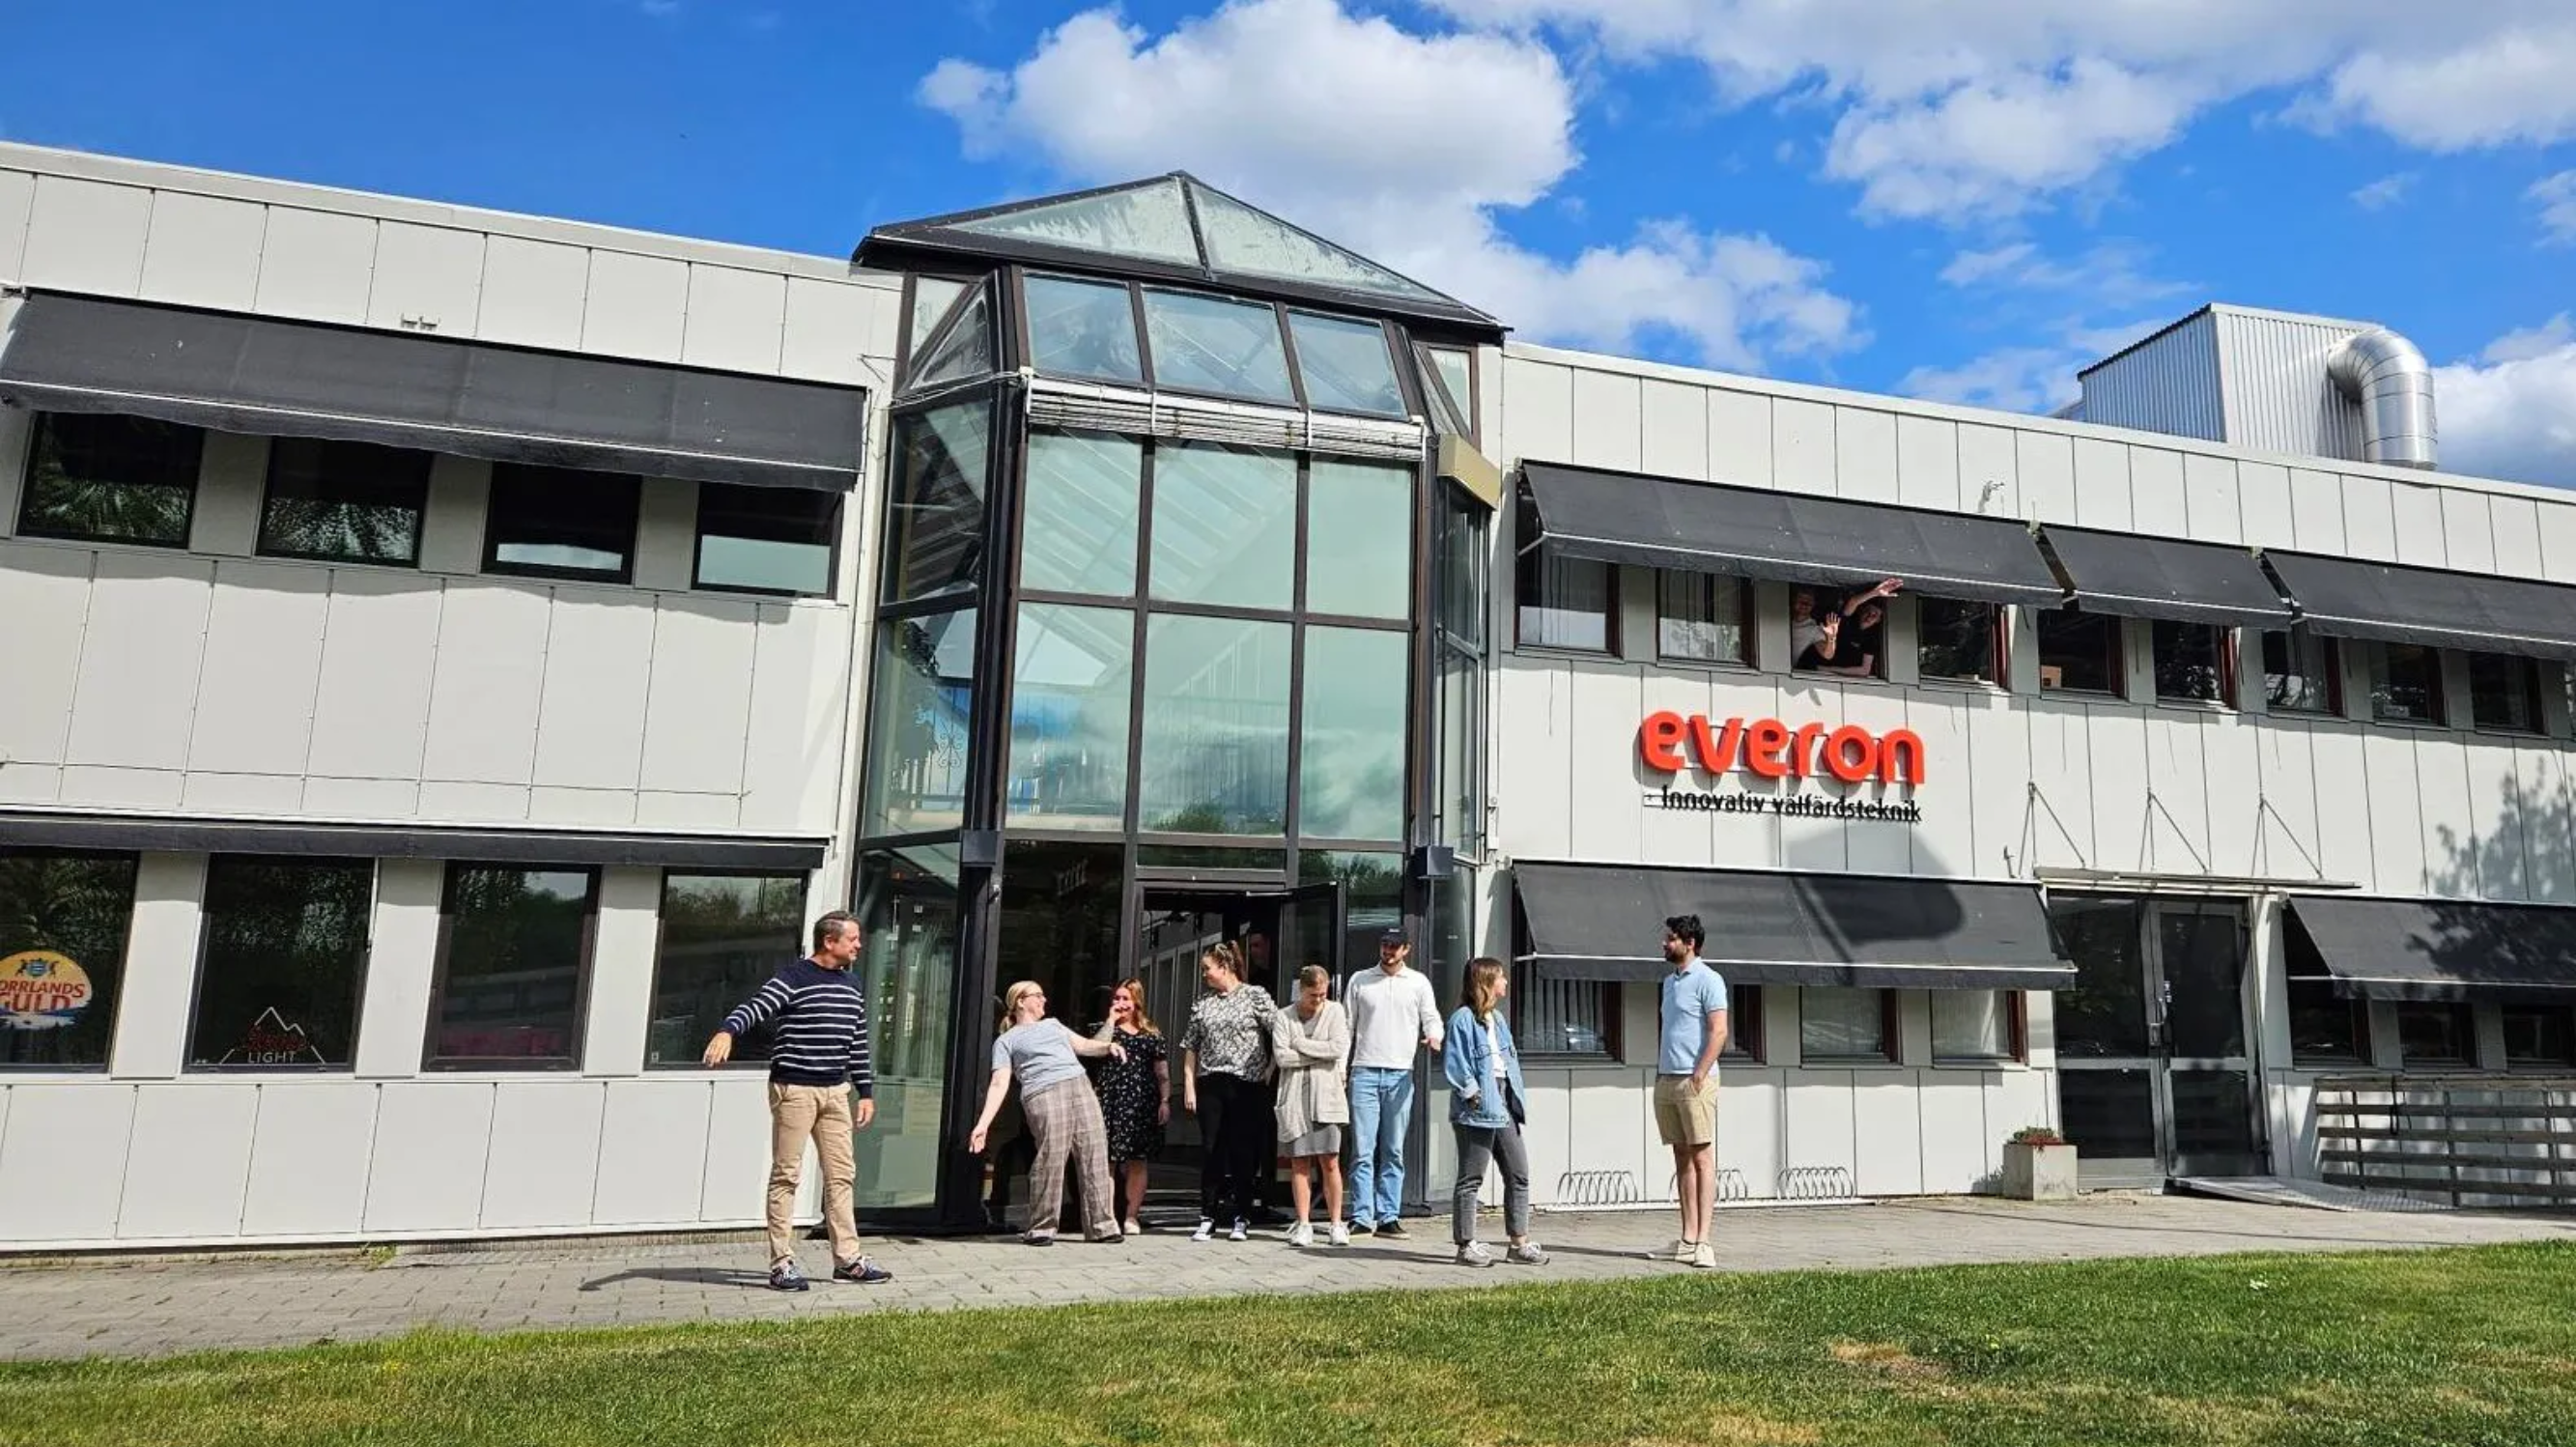 Teknikintresserad student sökes till Everon i Norrköping!